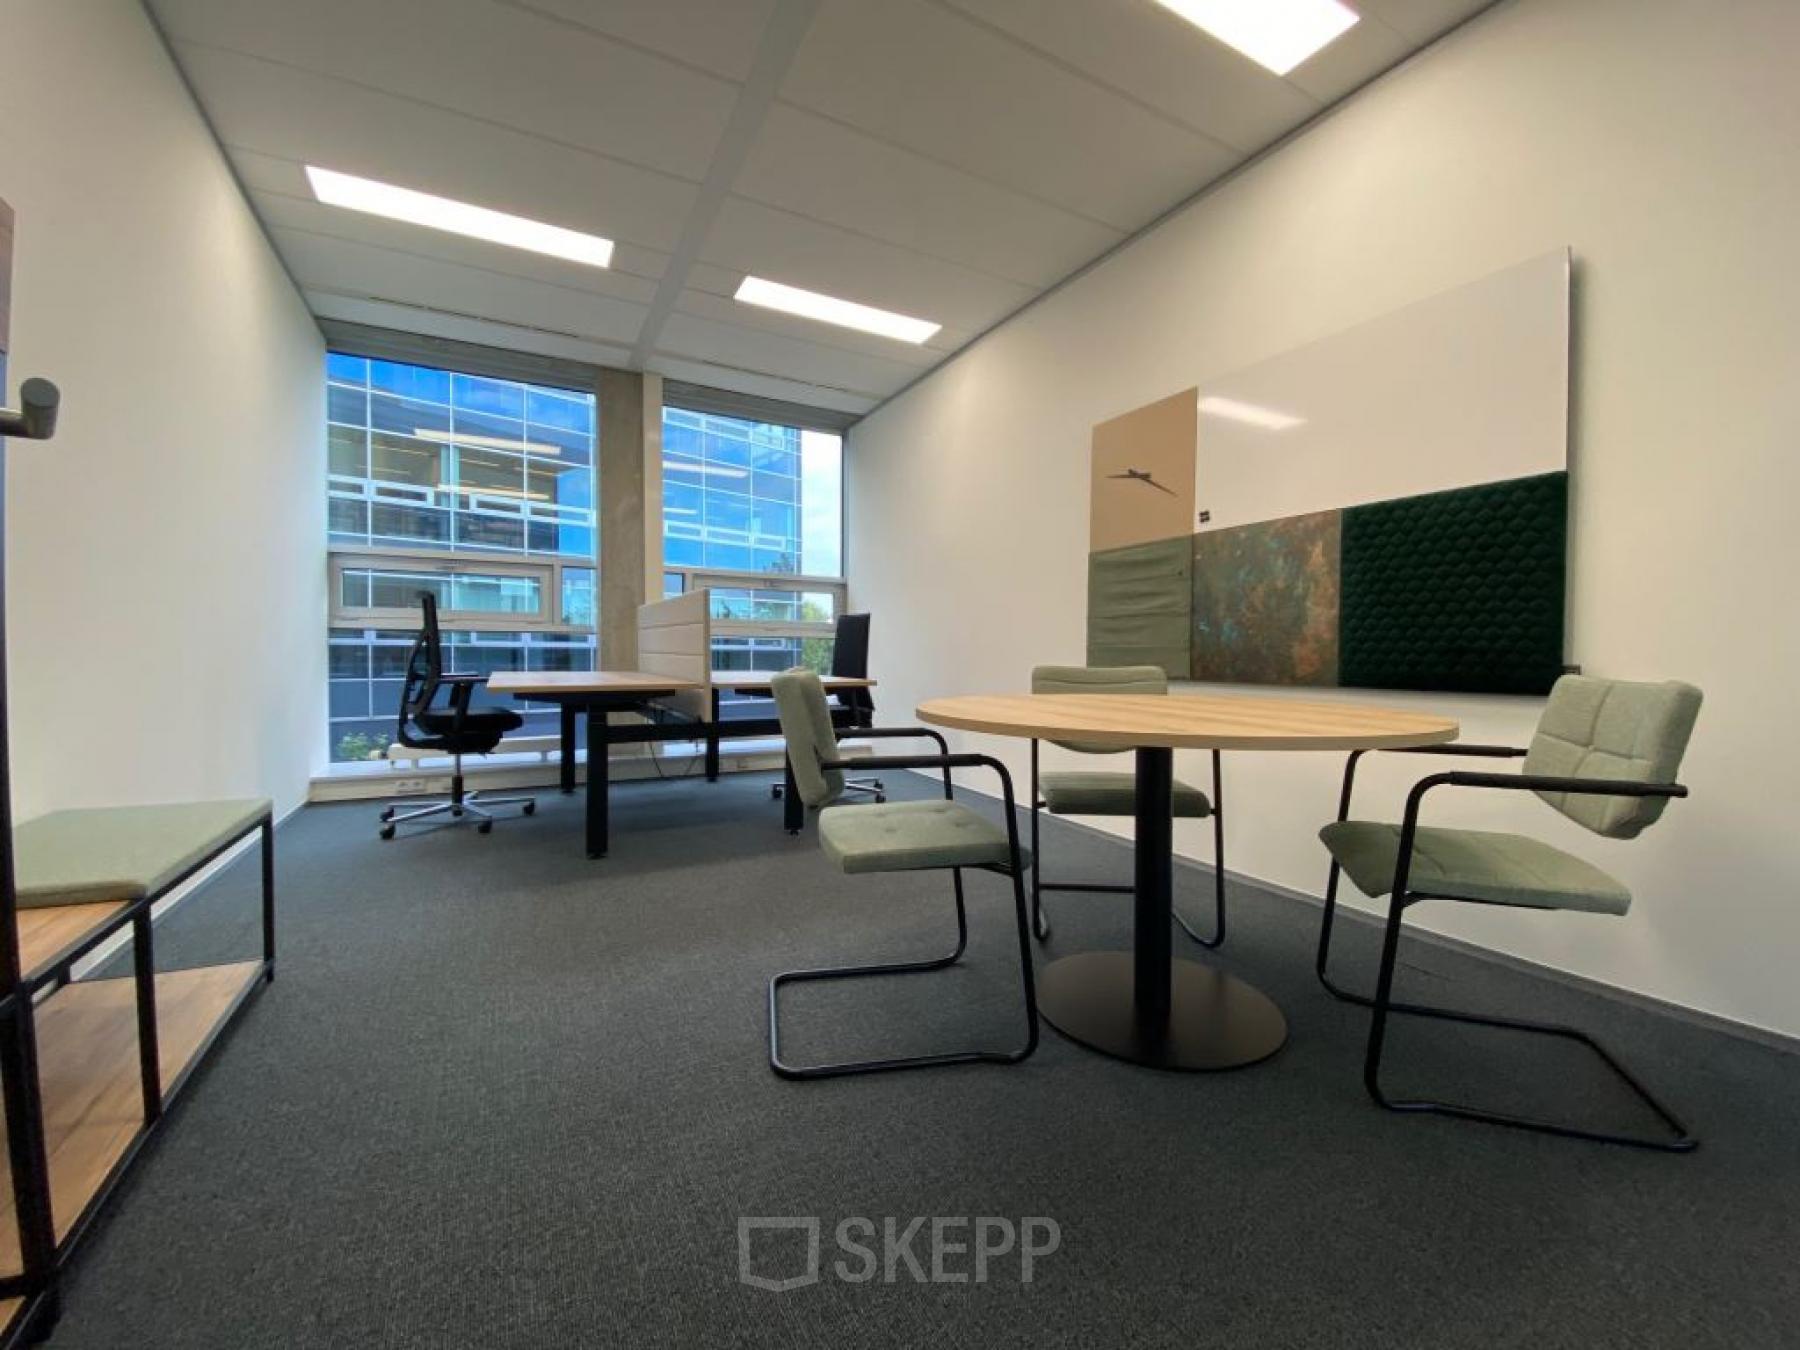 Rent office space Snellius 1, Heerlen (10)